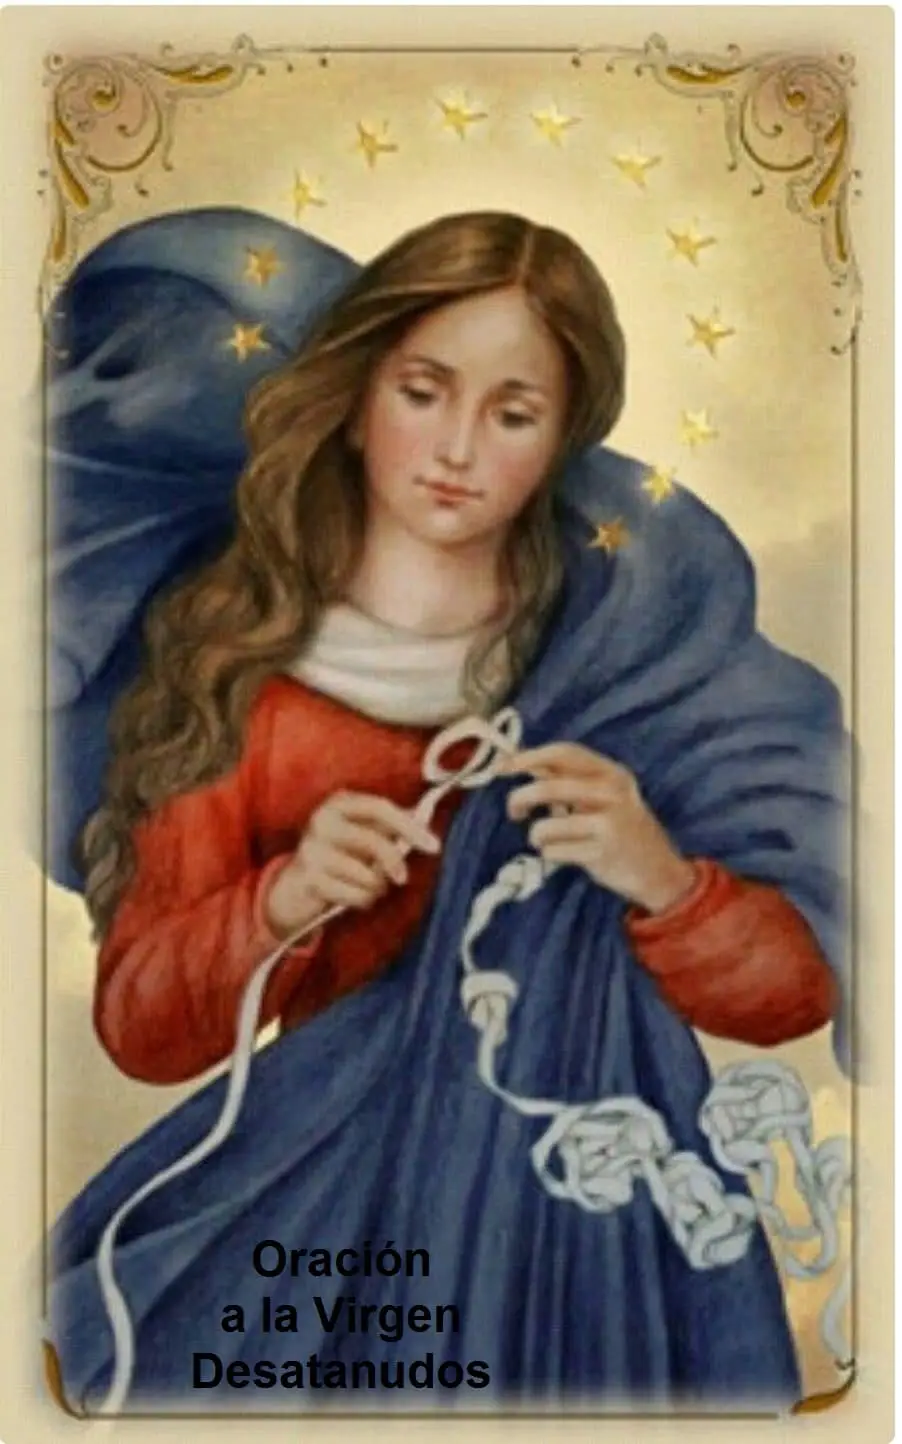 Oración a la Virgen Desatanudos